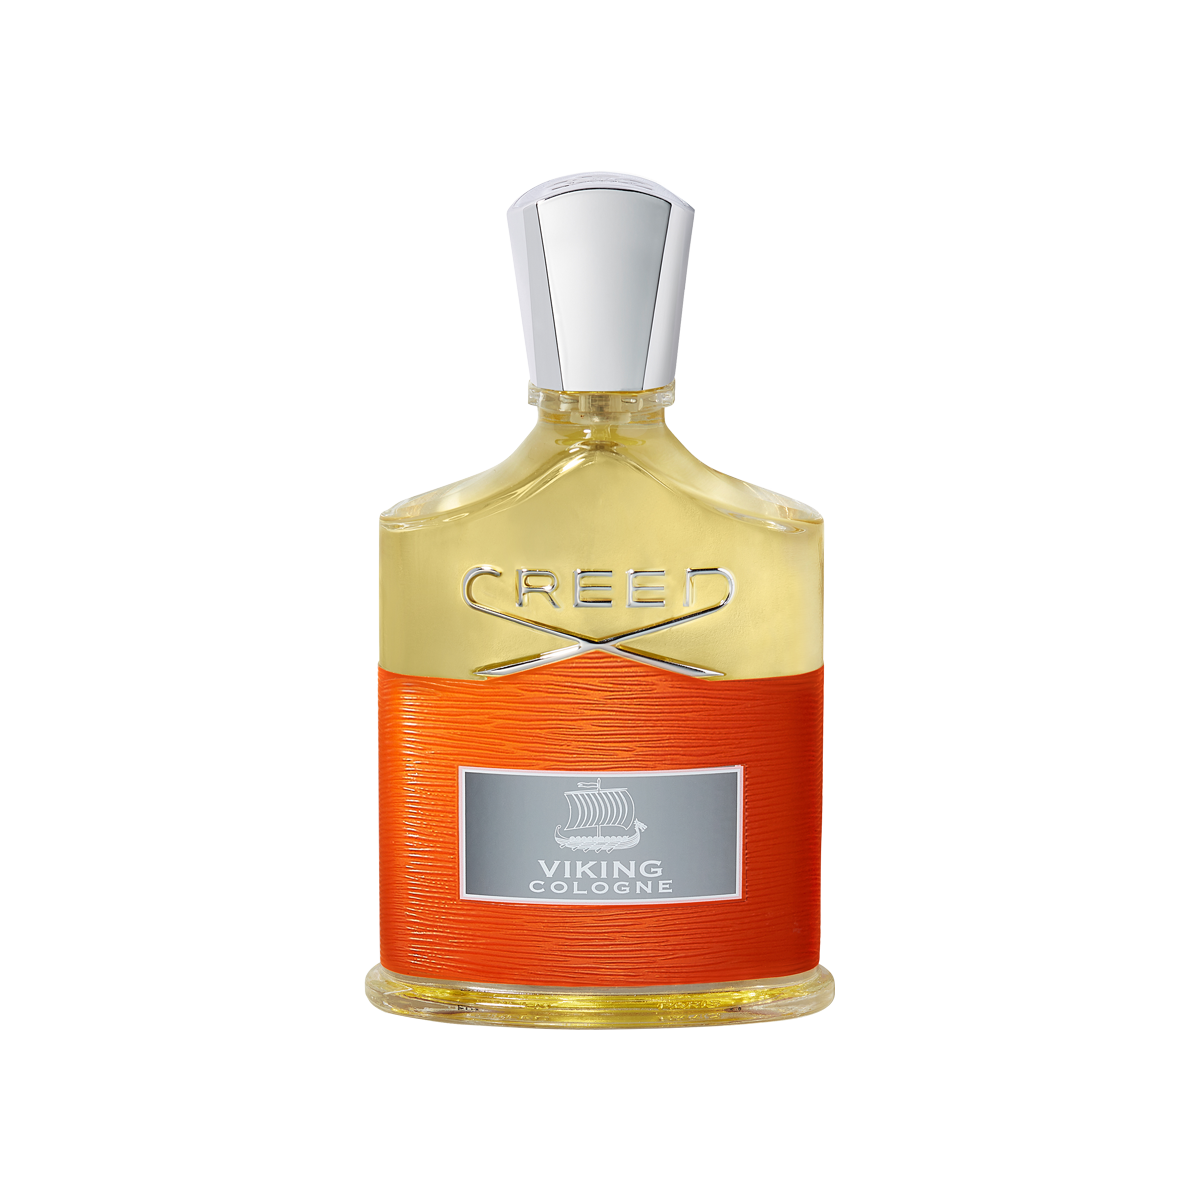 Creed - Viking Cologne Eau de Parfum